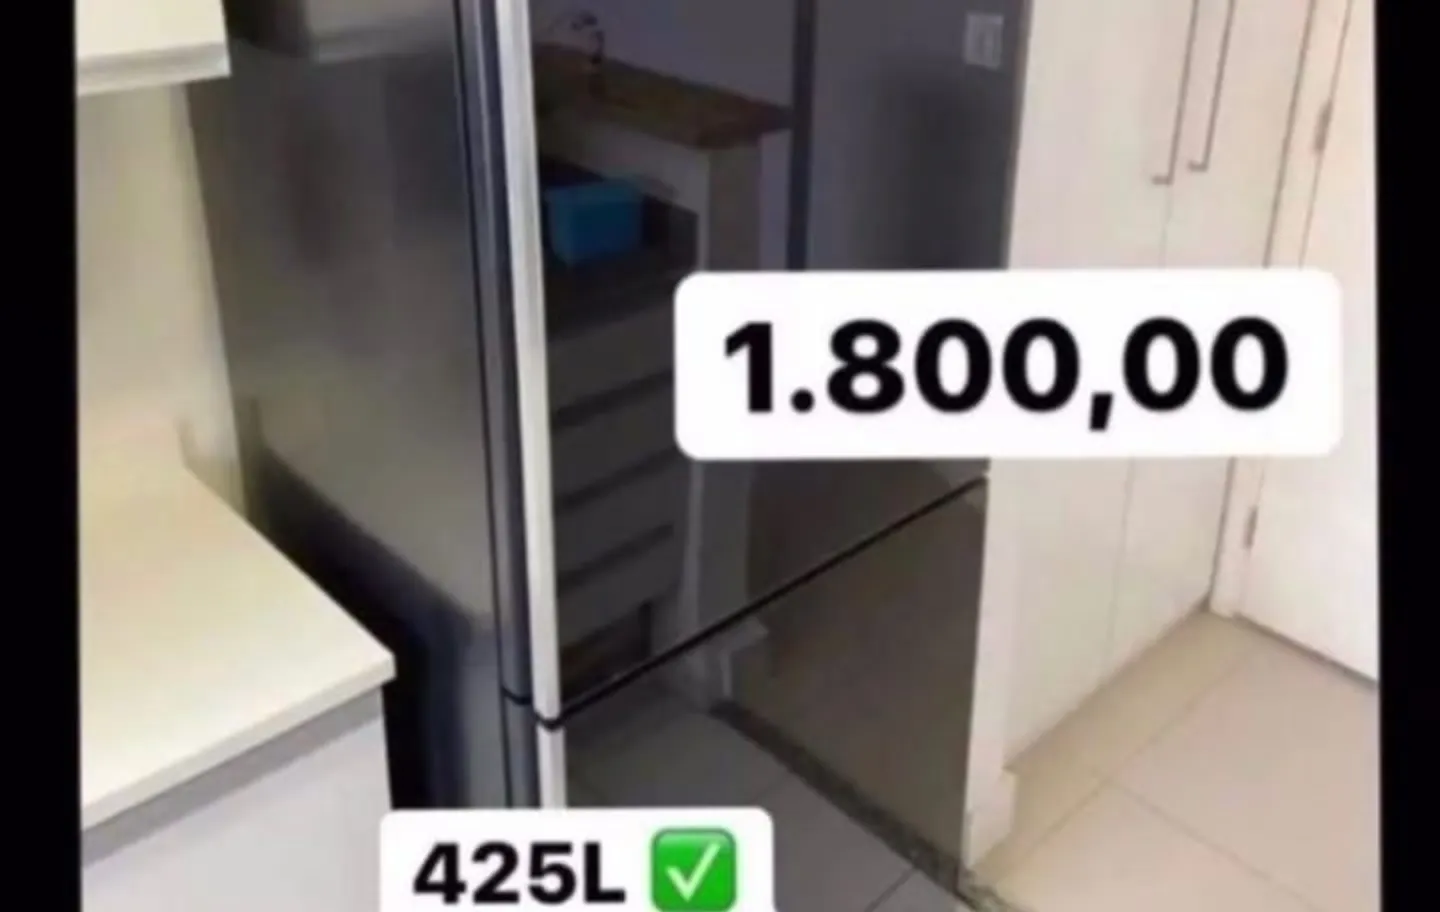 Criminosos anunciaram geladeira a baixo preço no perfil de Juliana